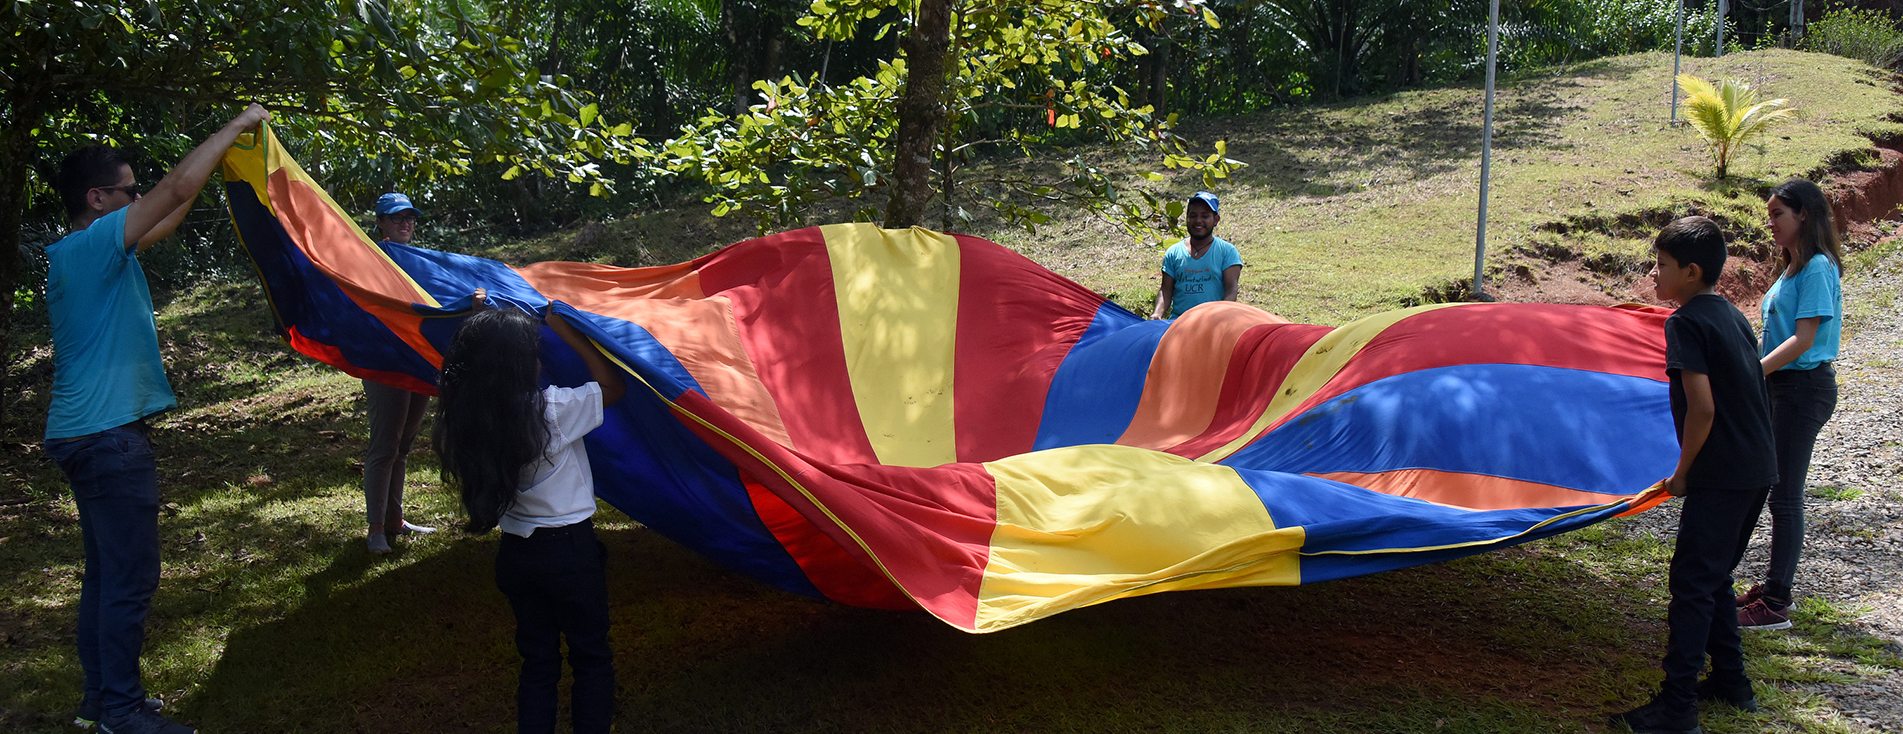 Desde 1946, en el gobierno de Teodoro Picado, se estableció el 9 de setiembre como el Día de la Niña y el Niño, una fecha propicia para reafirmar los compromisos del Estado con la niñez y la adolescencia que habita en Costa Rica.  Foto archivo ODI.